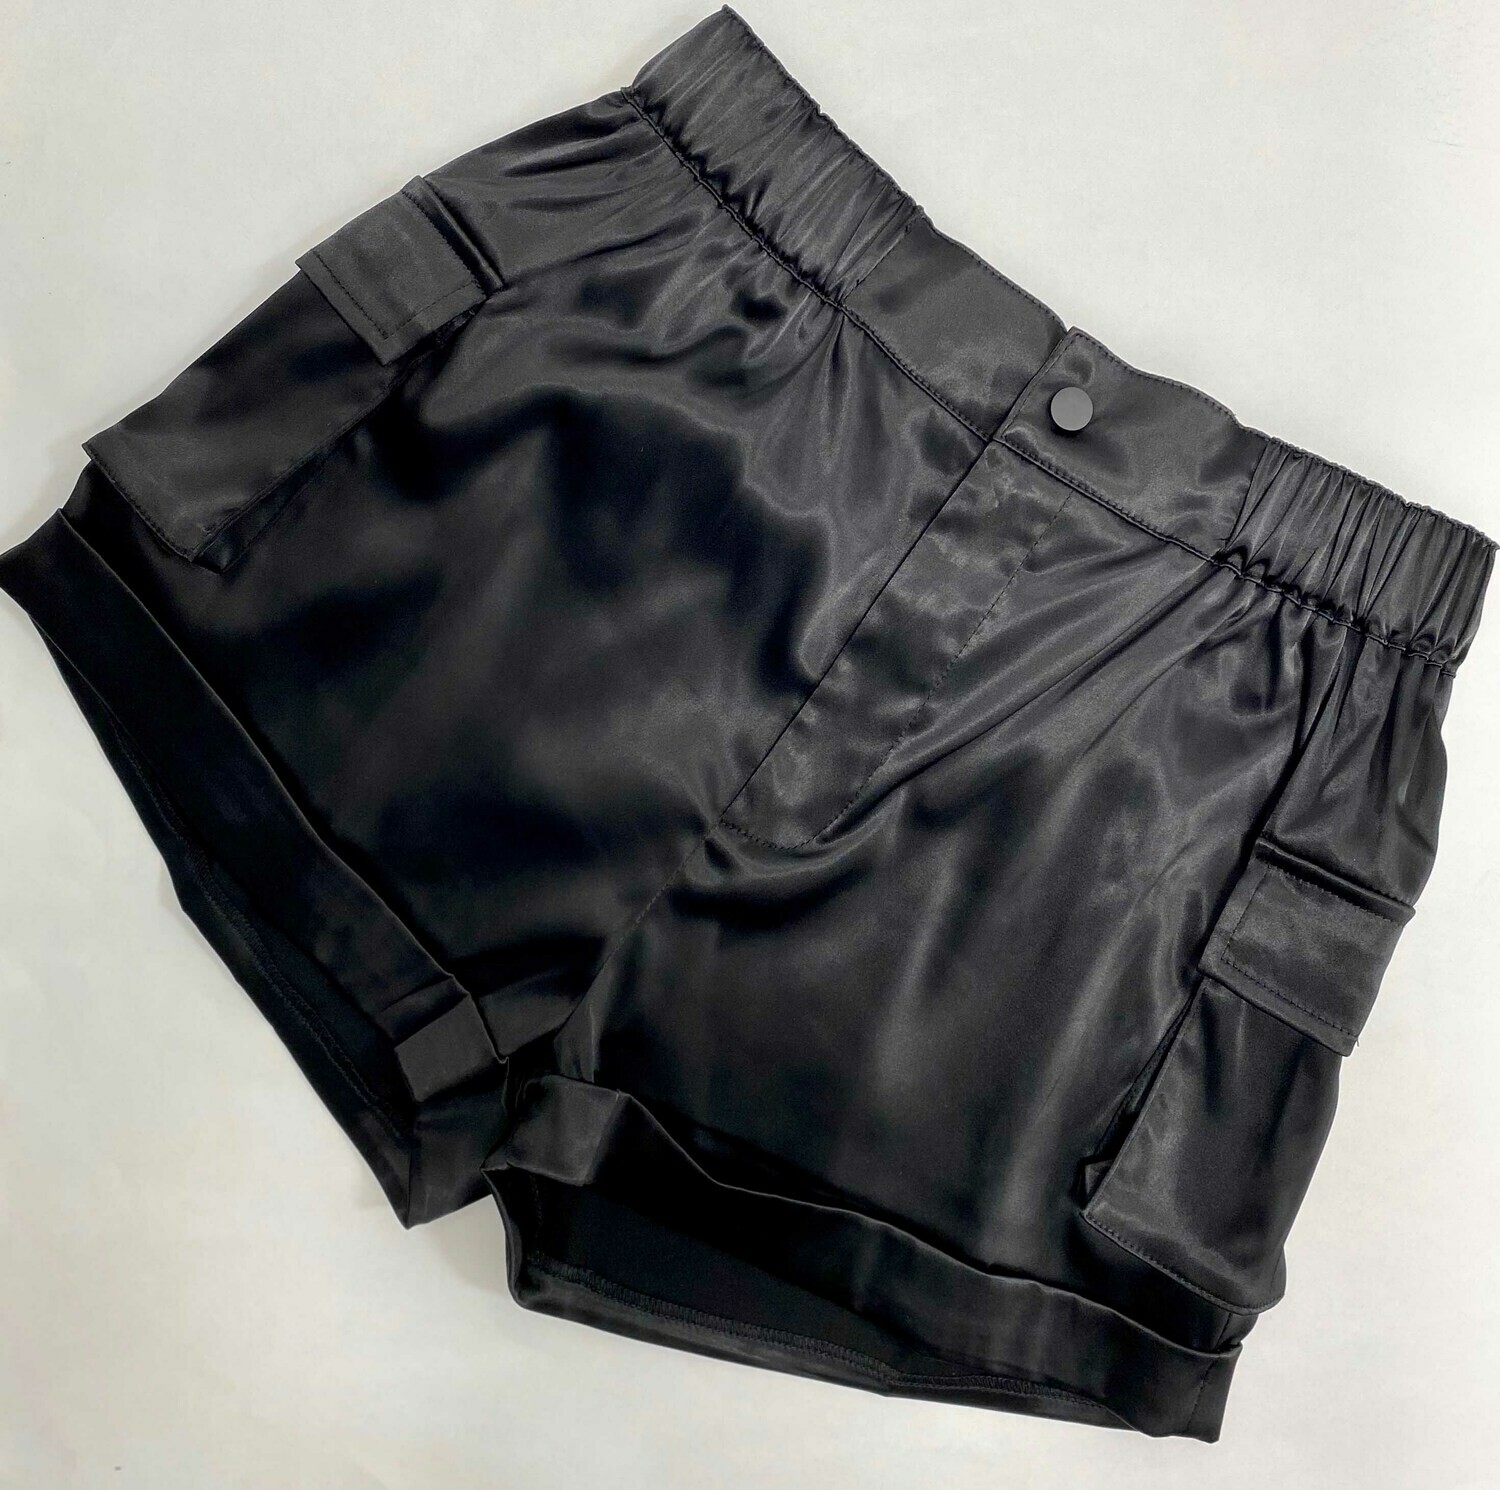 Satin Shorts With Cargo Pockets